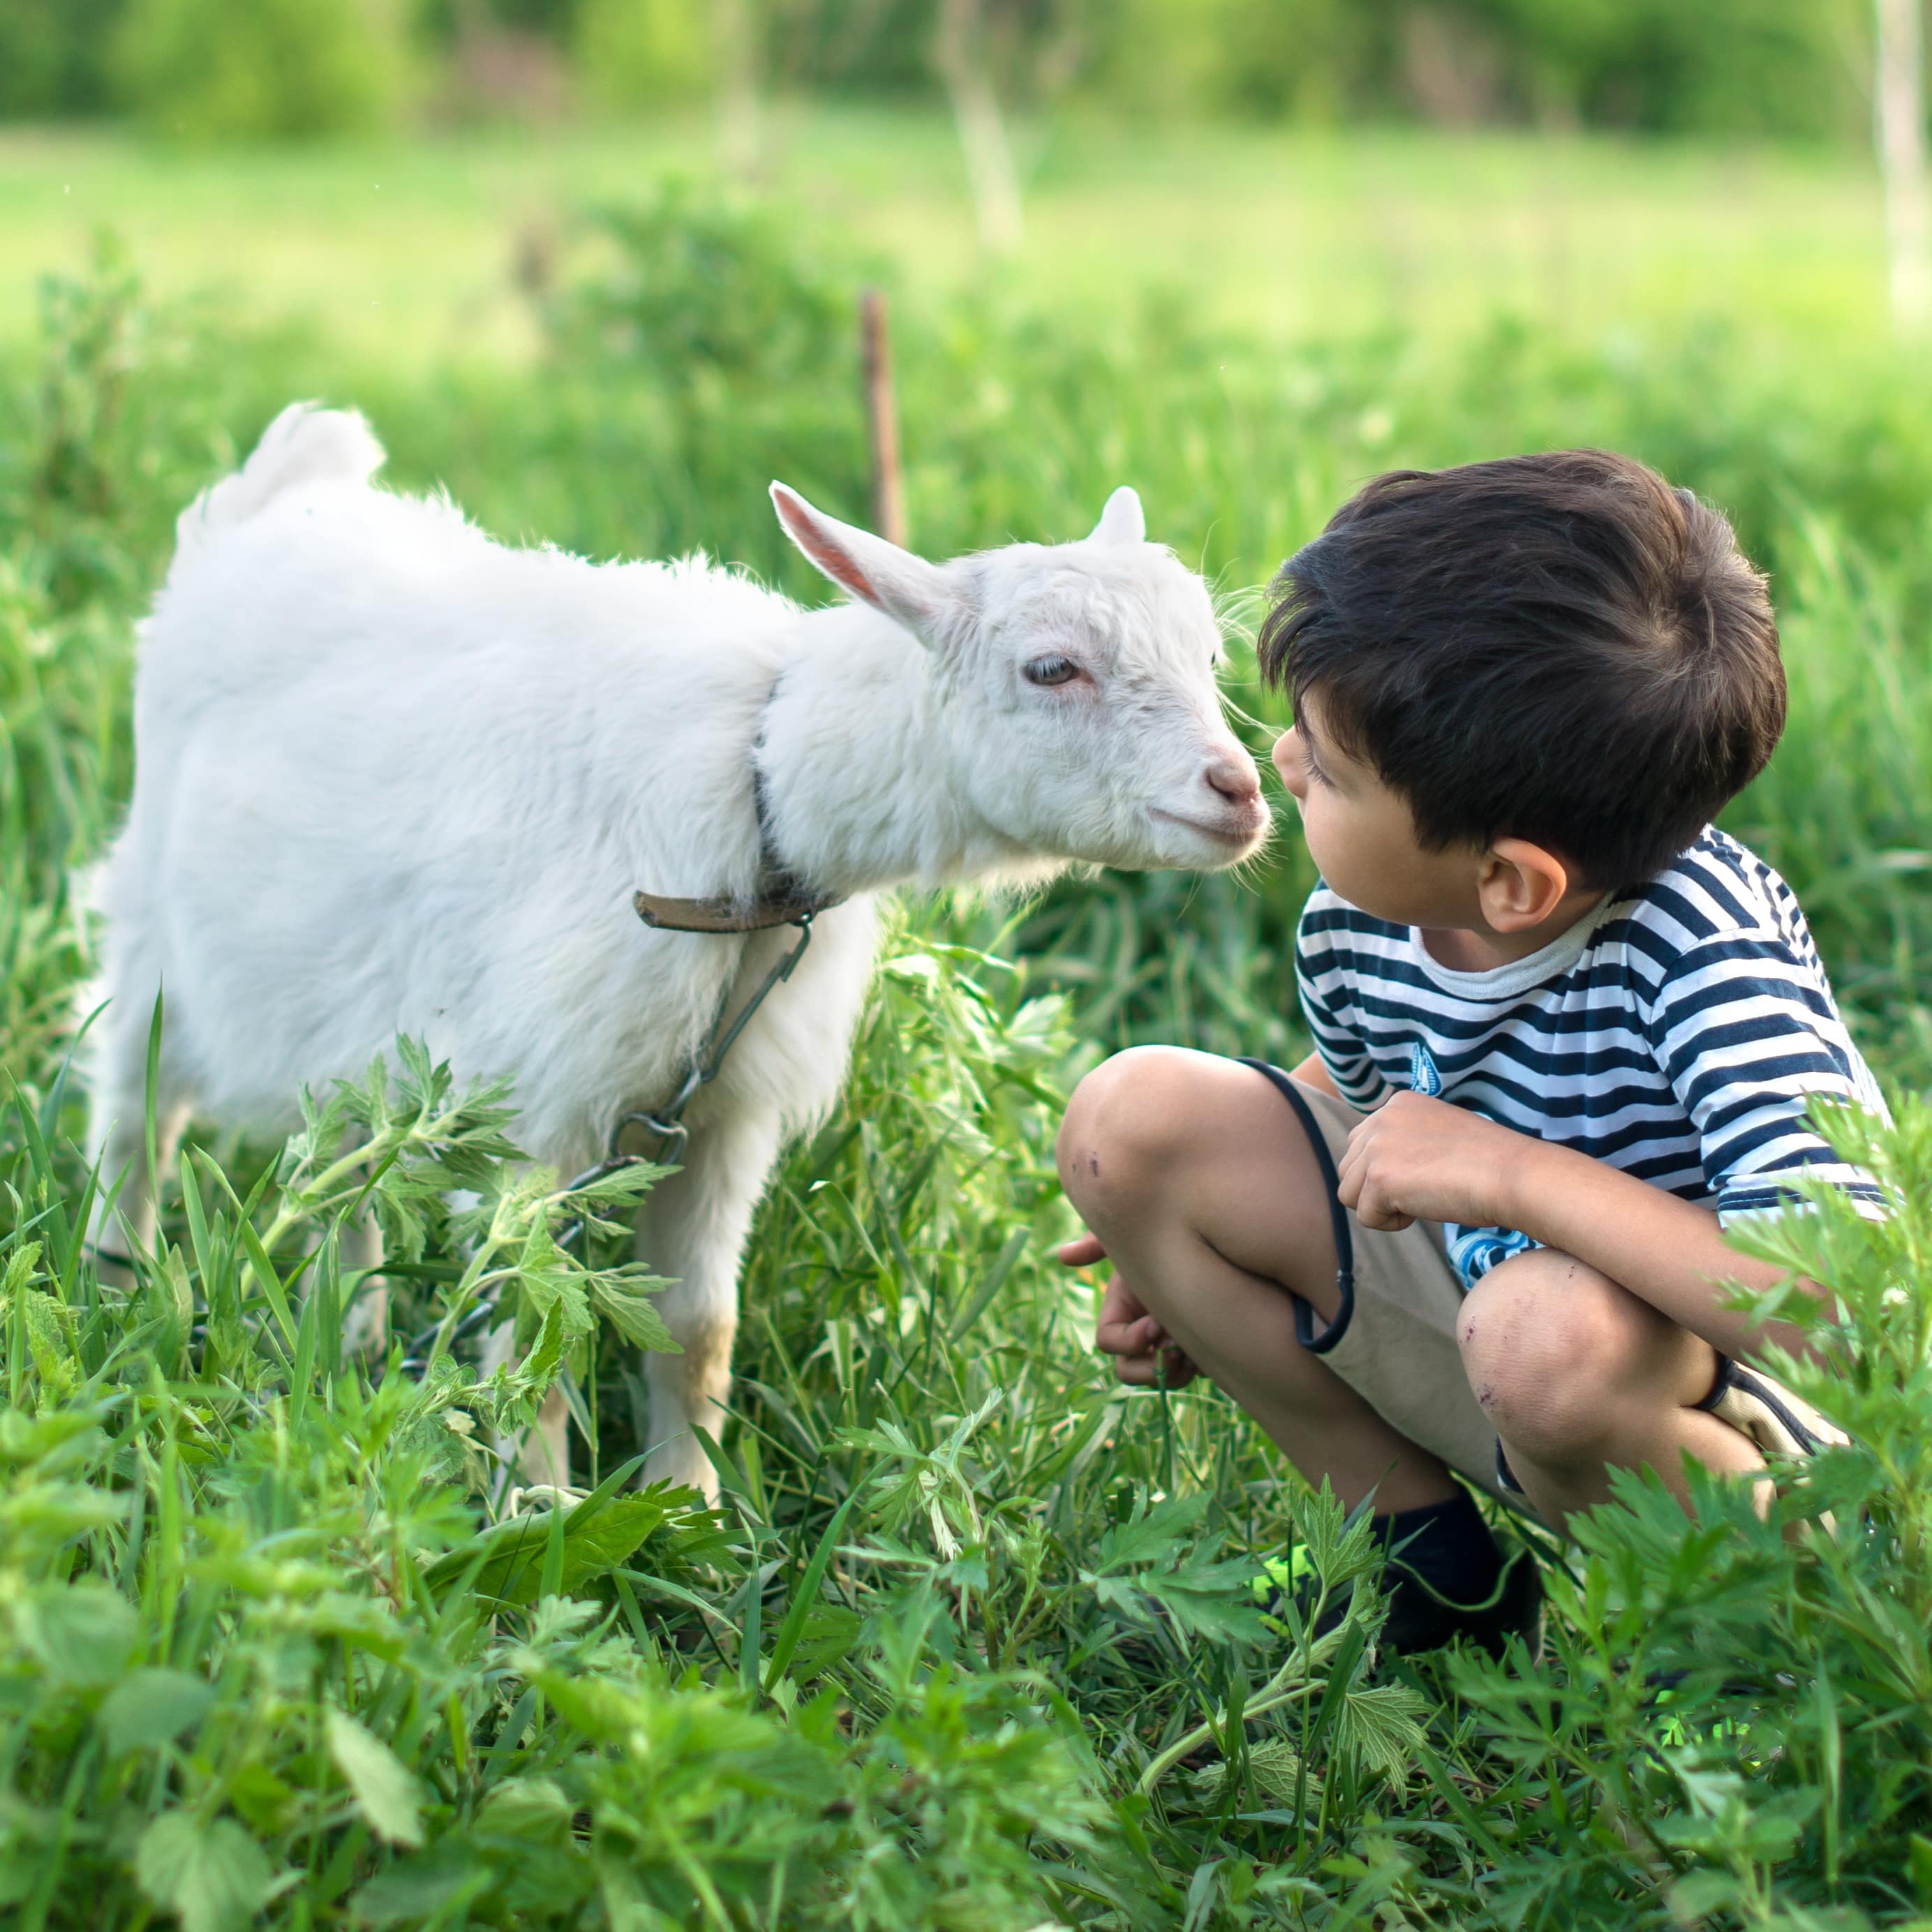 Ein Junge im gestreiften T-Shirt hockt auf einer Wiese, eine kleine weiße Ziege beschnuppert sein Gesicht.